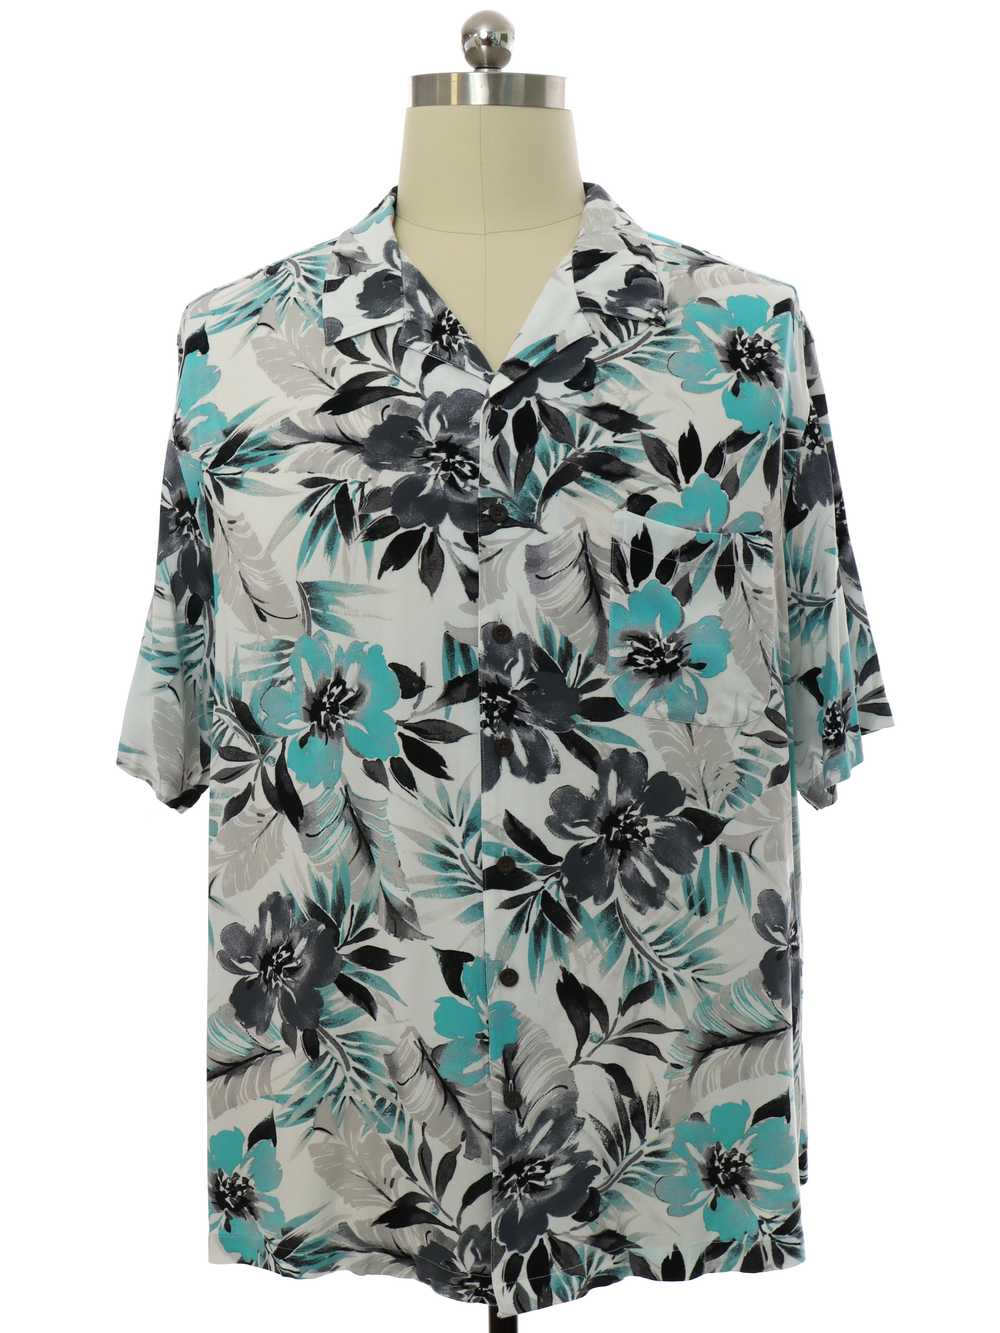 1990's Mens Rayon Hawaiian Shirt - image 1